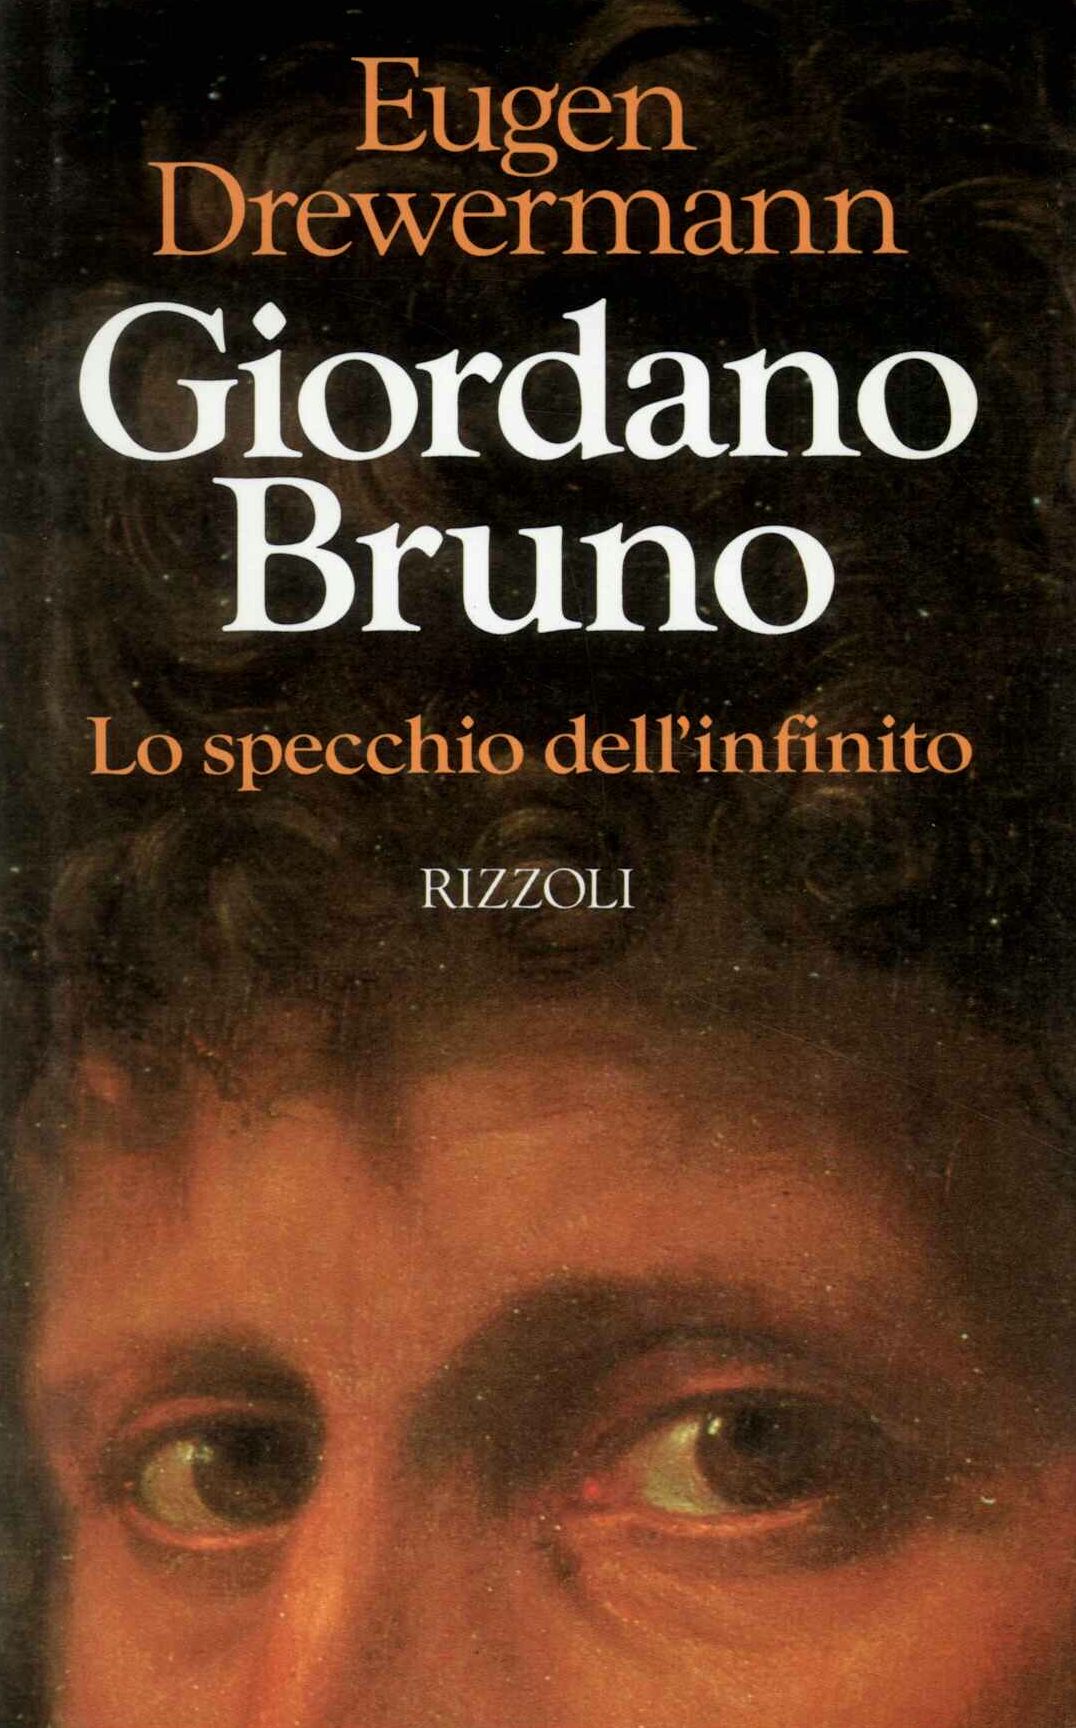 Giordano Bruno lo specchio infinito